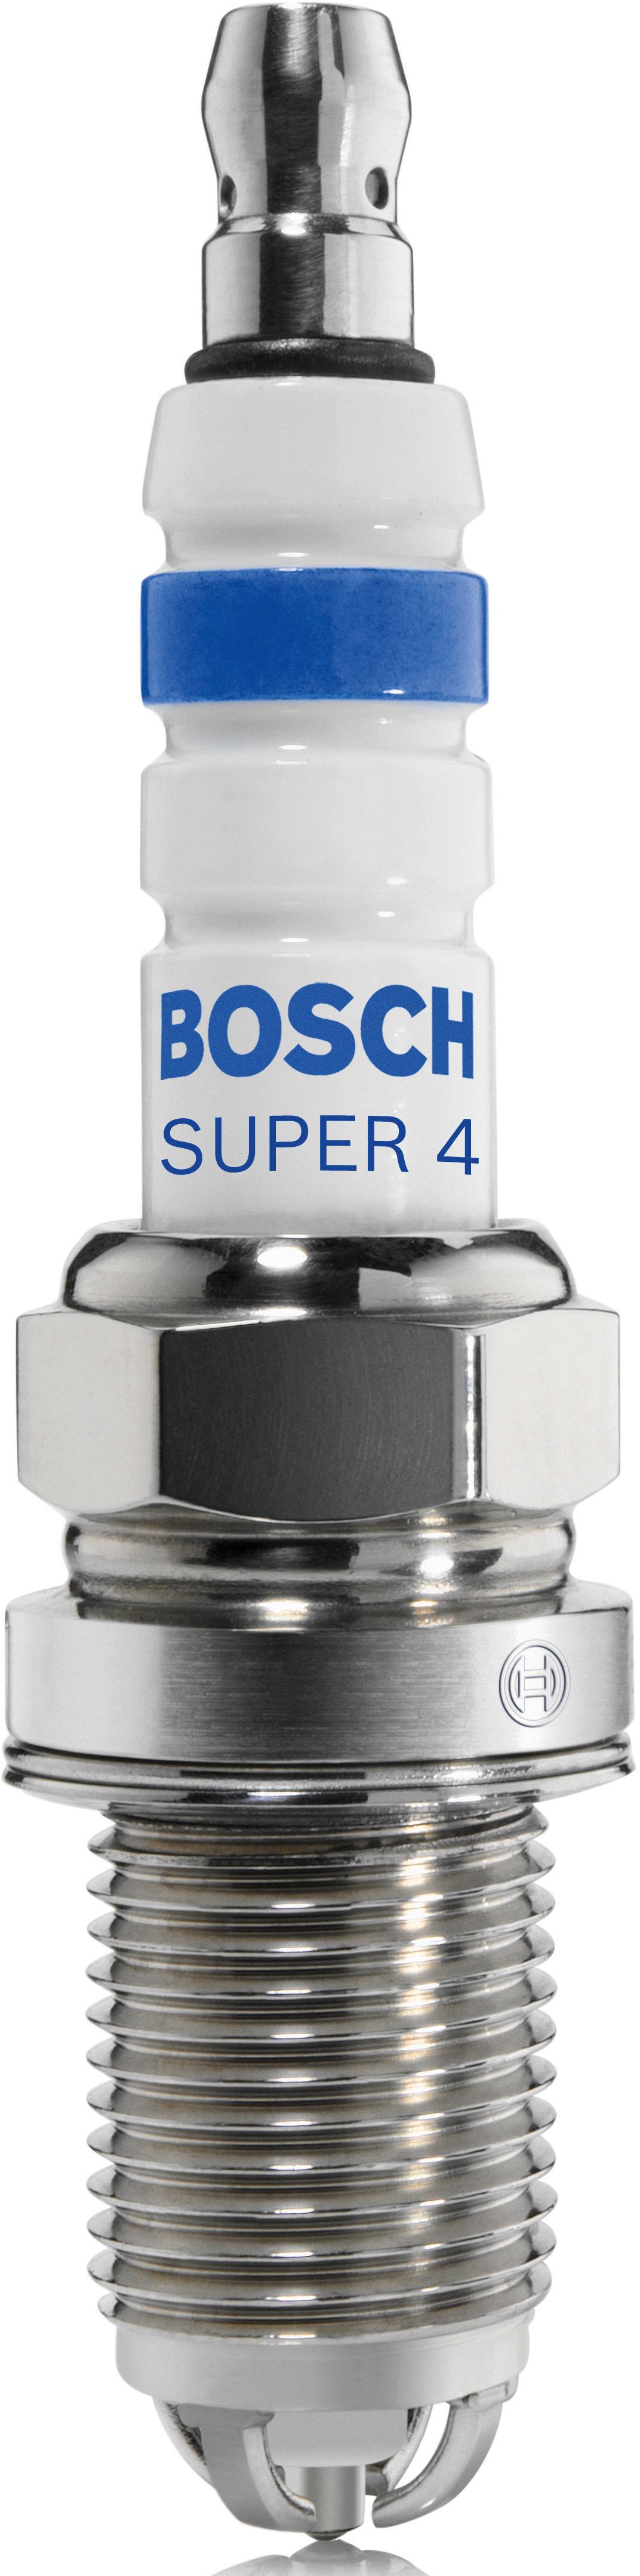 Fr78Nx Bosch Super 4 Spark Plug X4